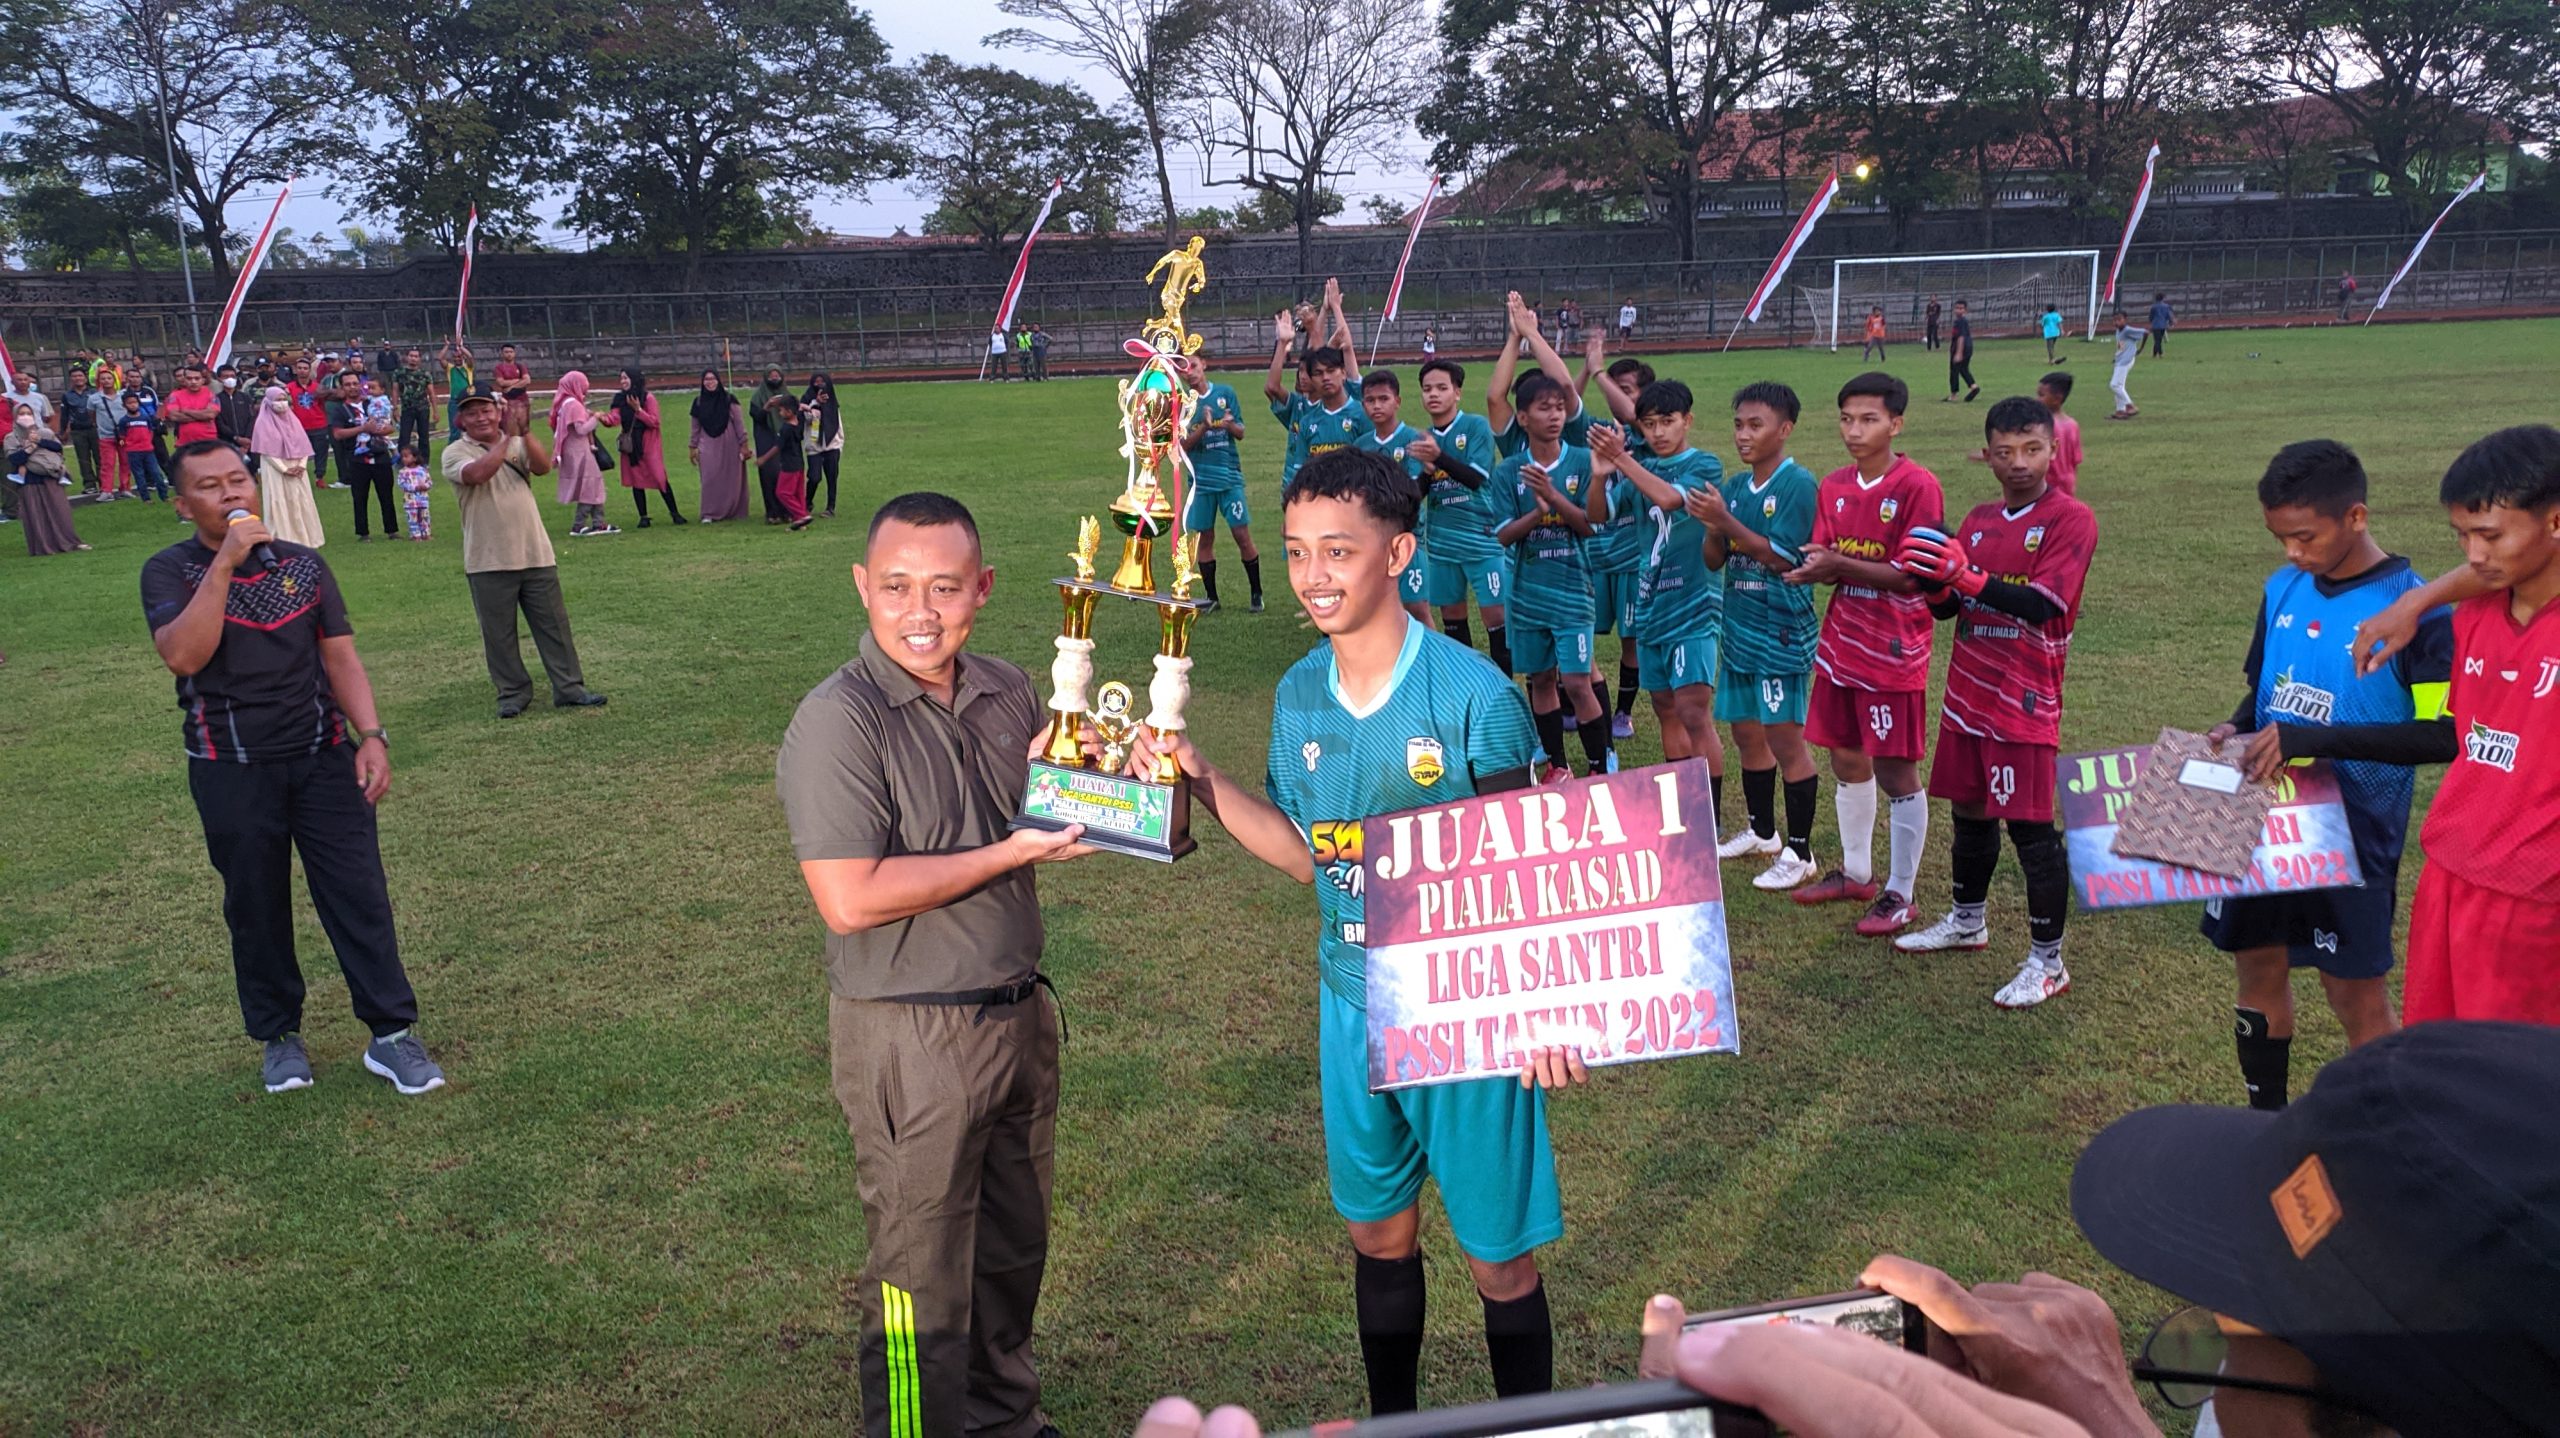 DANDIM 0723 Klaten Menyerahkan Piala Kepada Kapten Juara 1